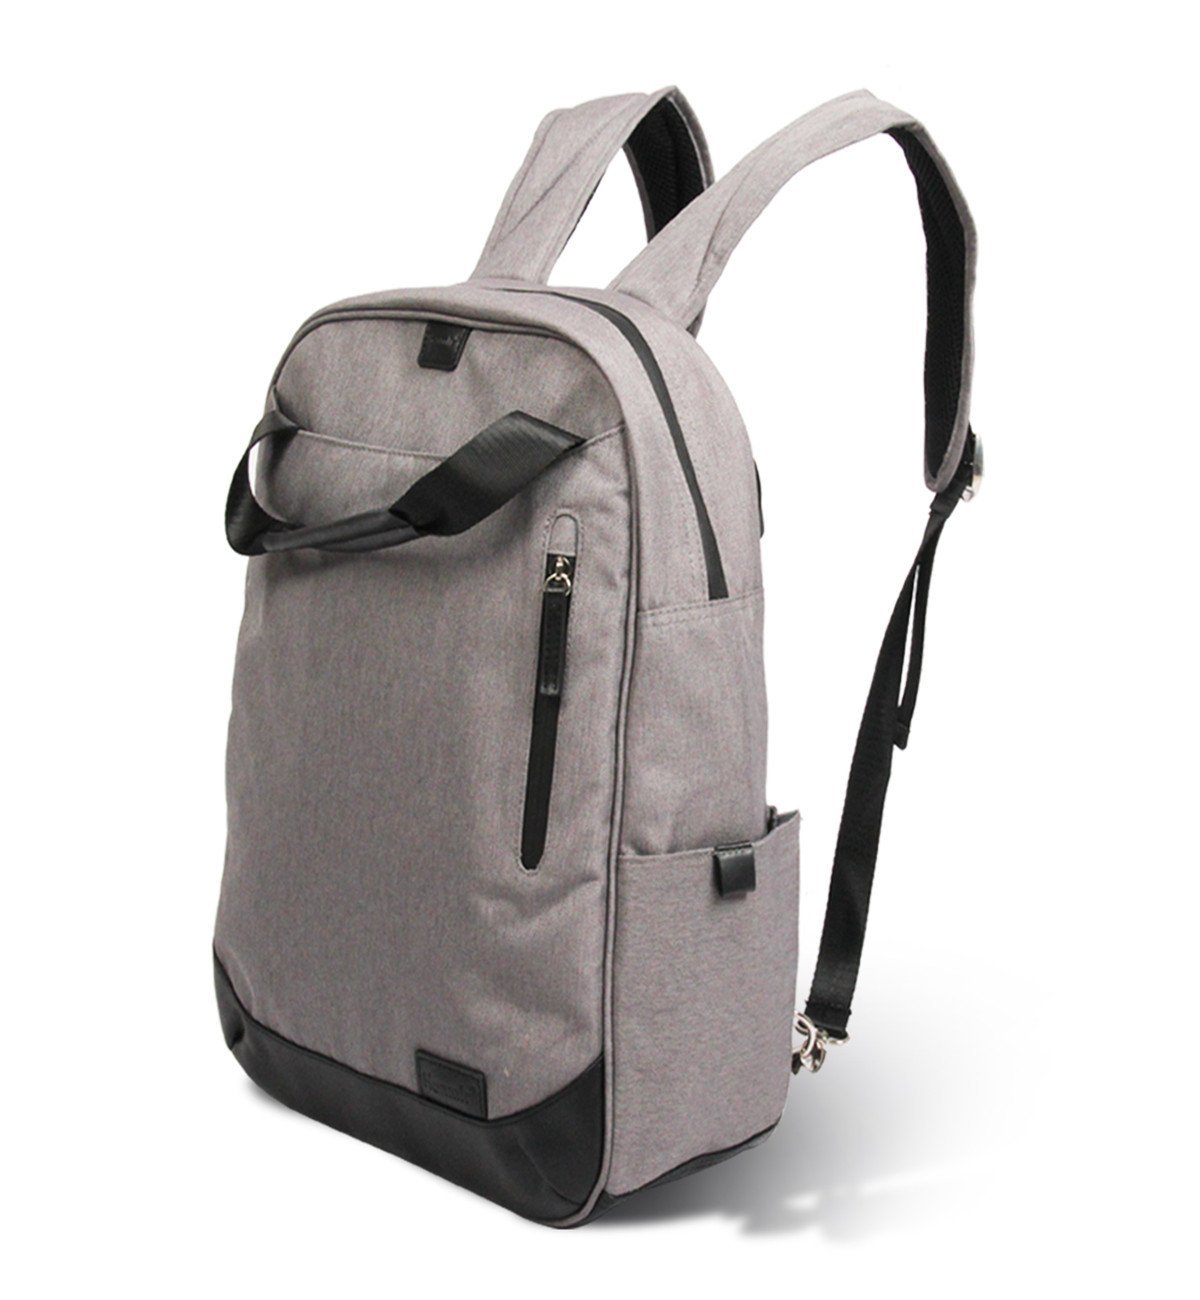 Waterproof computer backpack